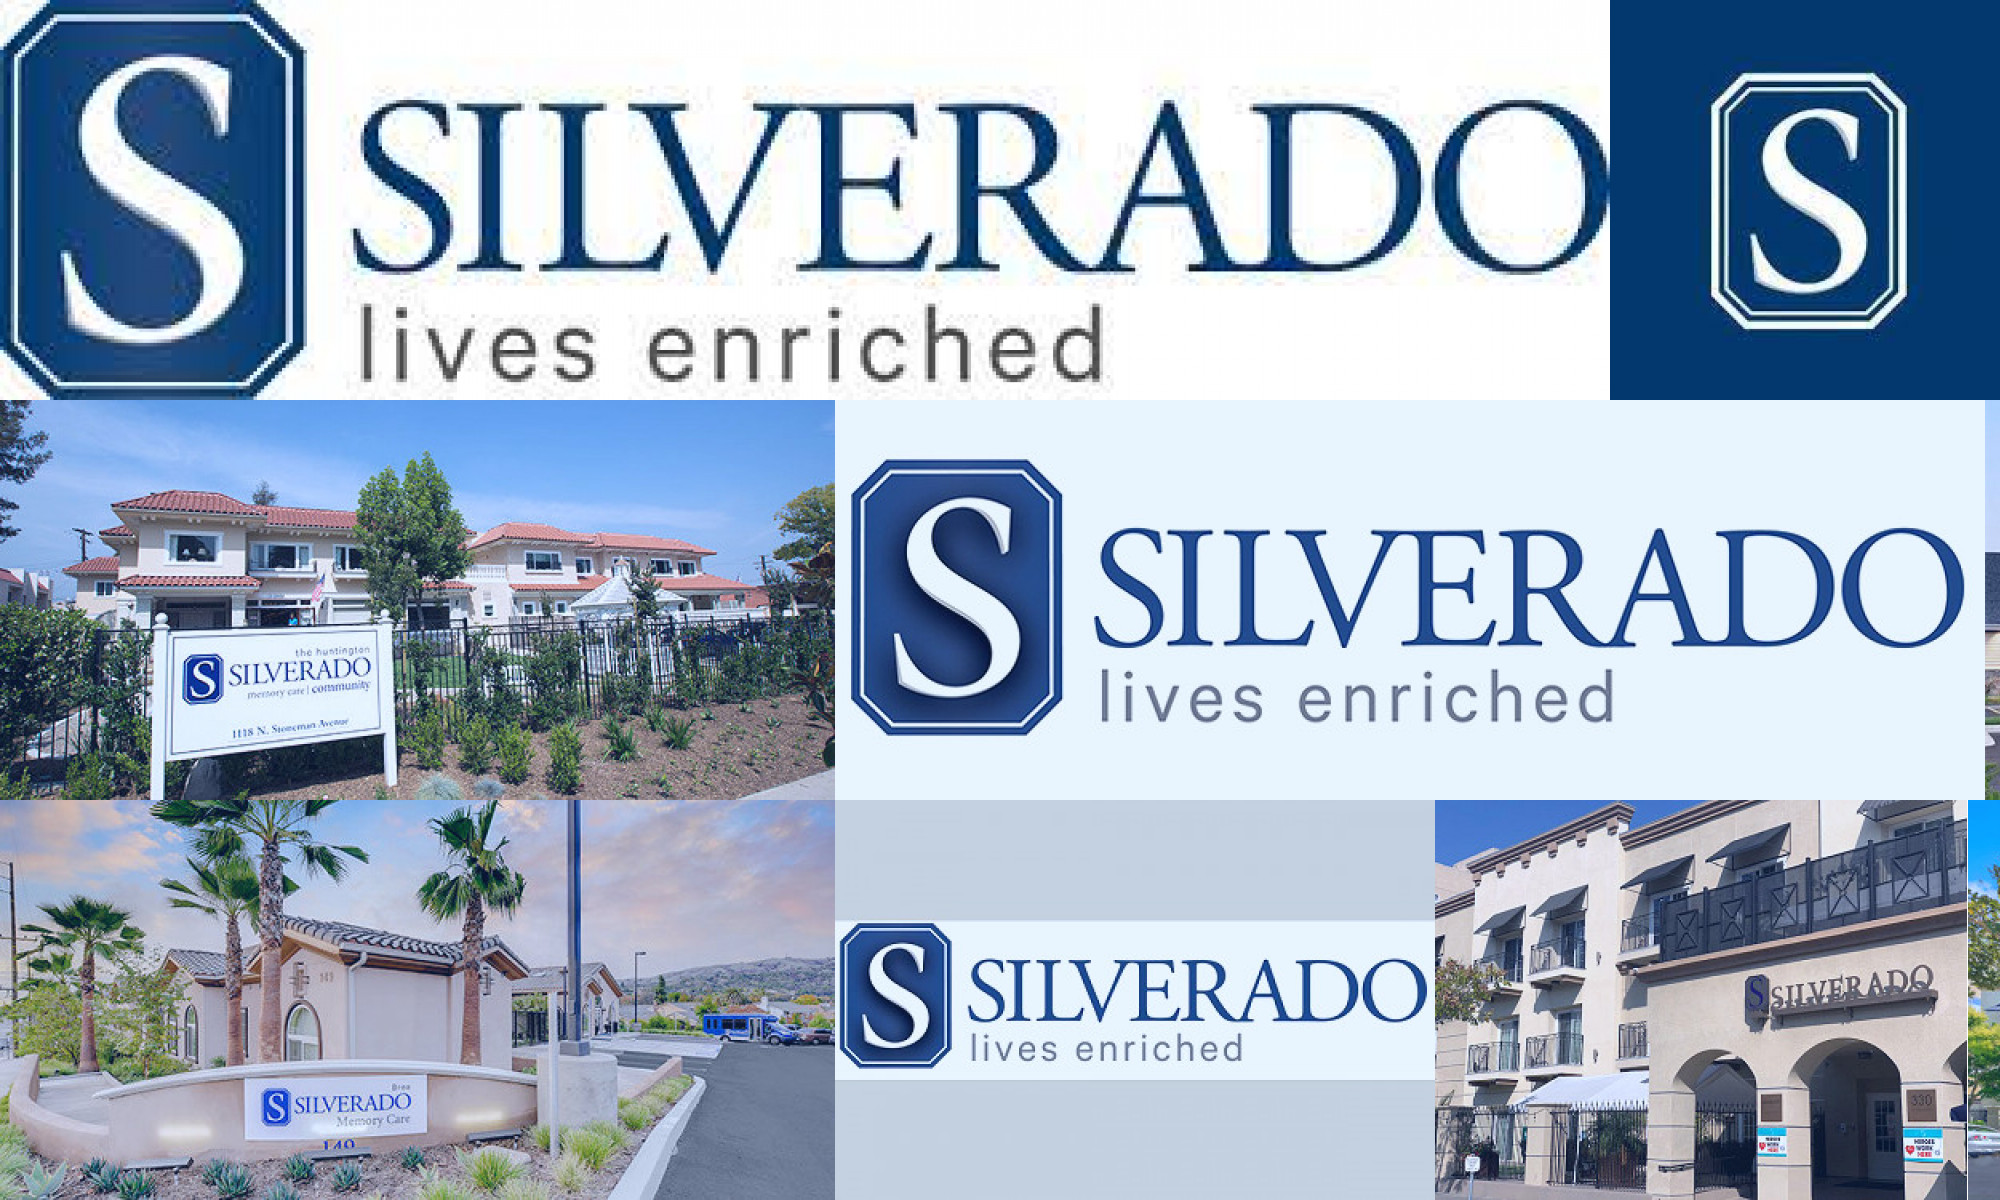 silverado senior living